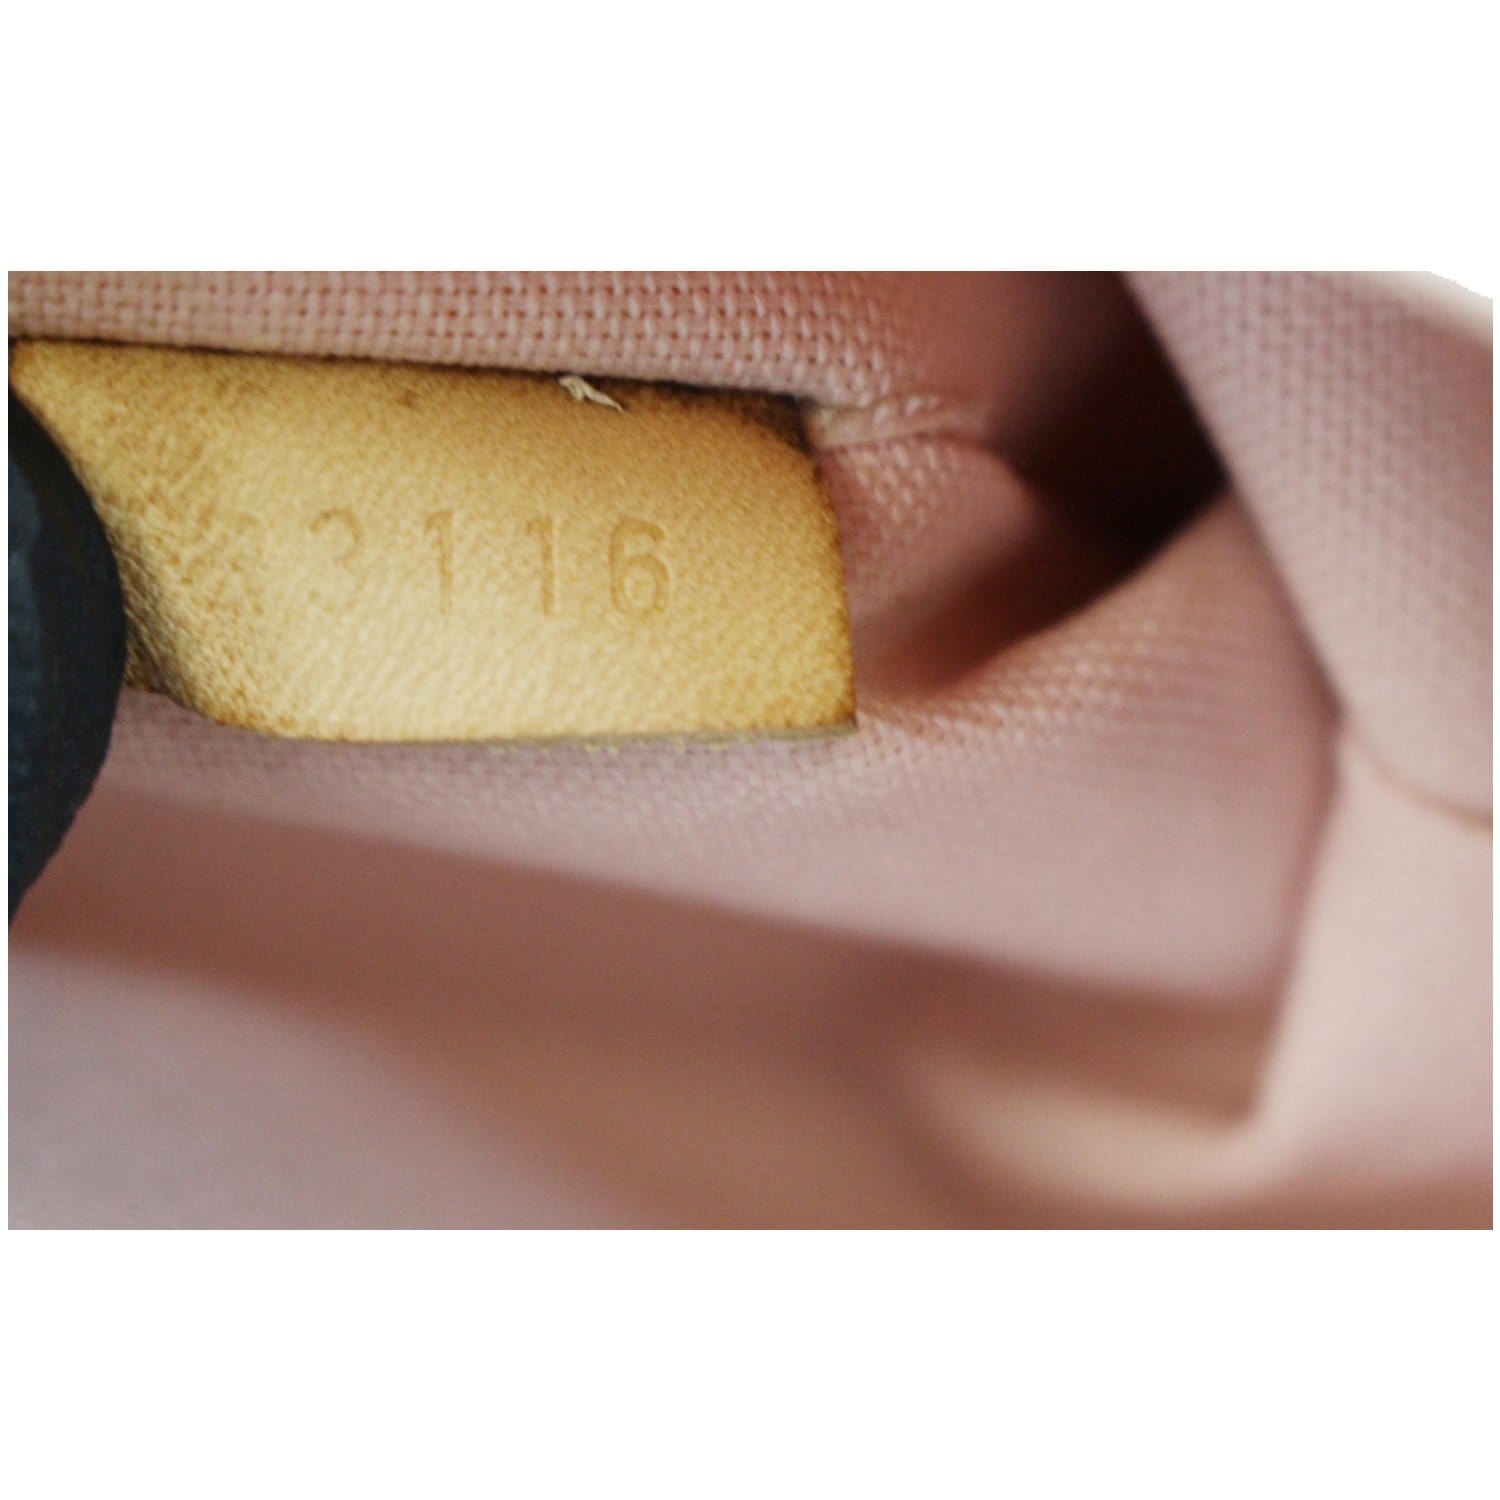 Louis Vuitton, Bags, Authentic Louis Vuitton Date Codes